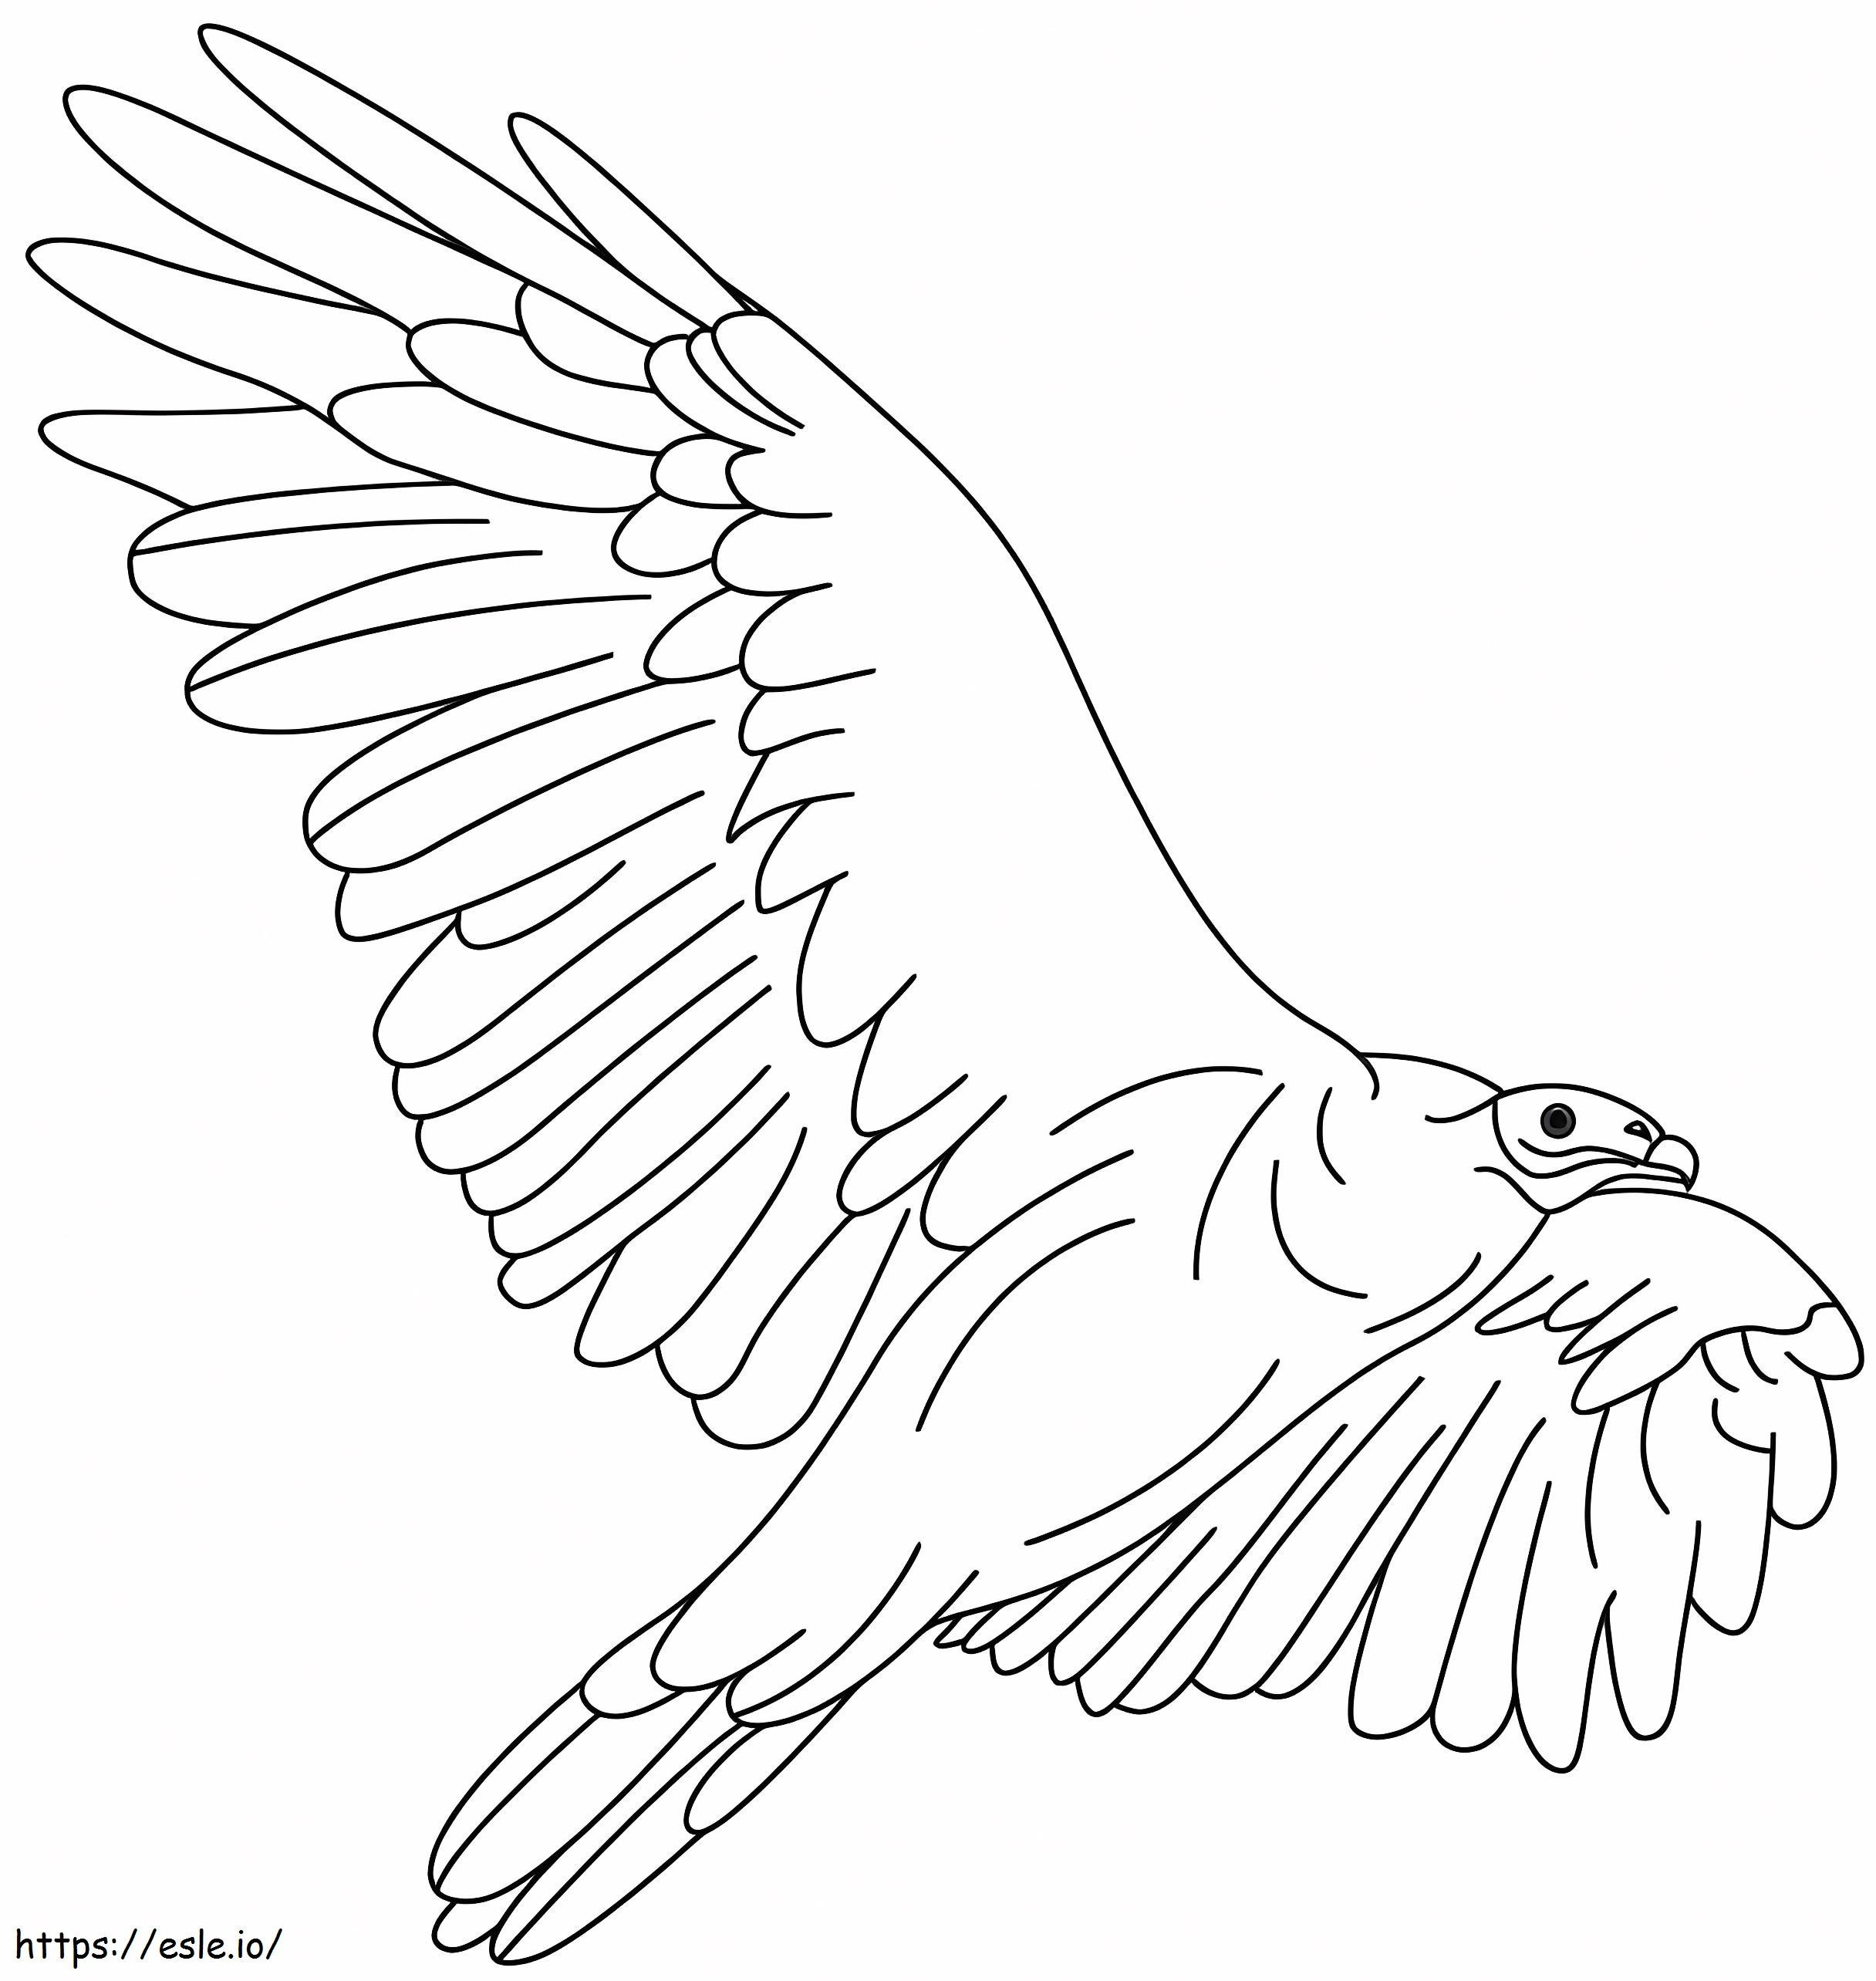 Vaikuttava Condor värityskuva